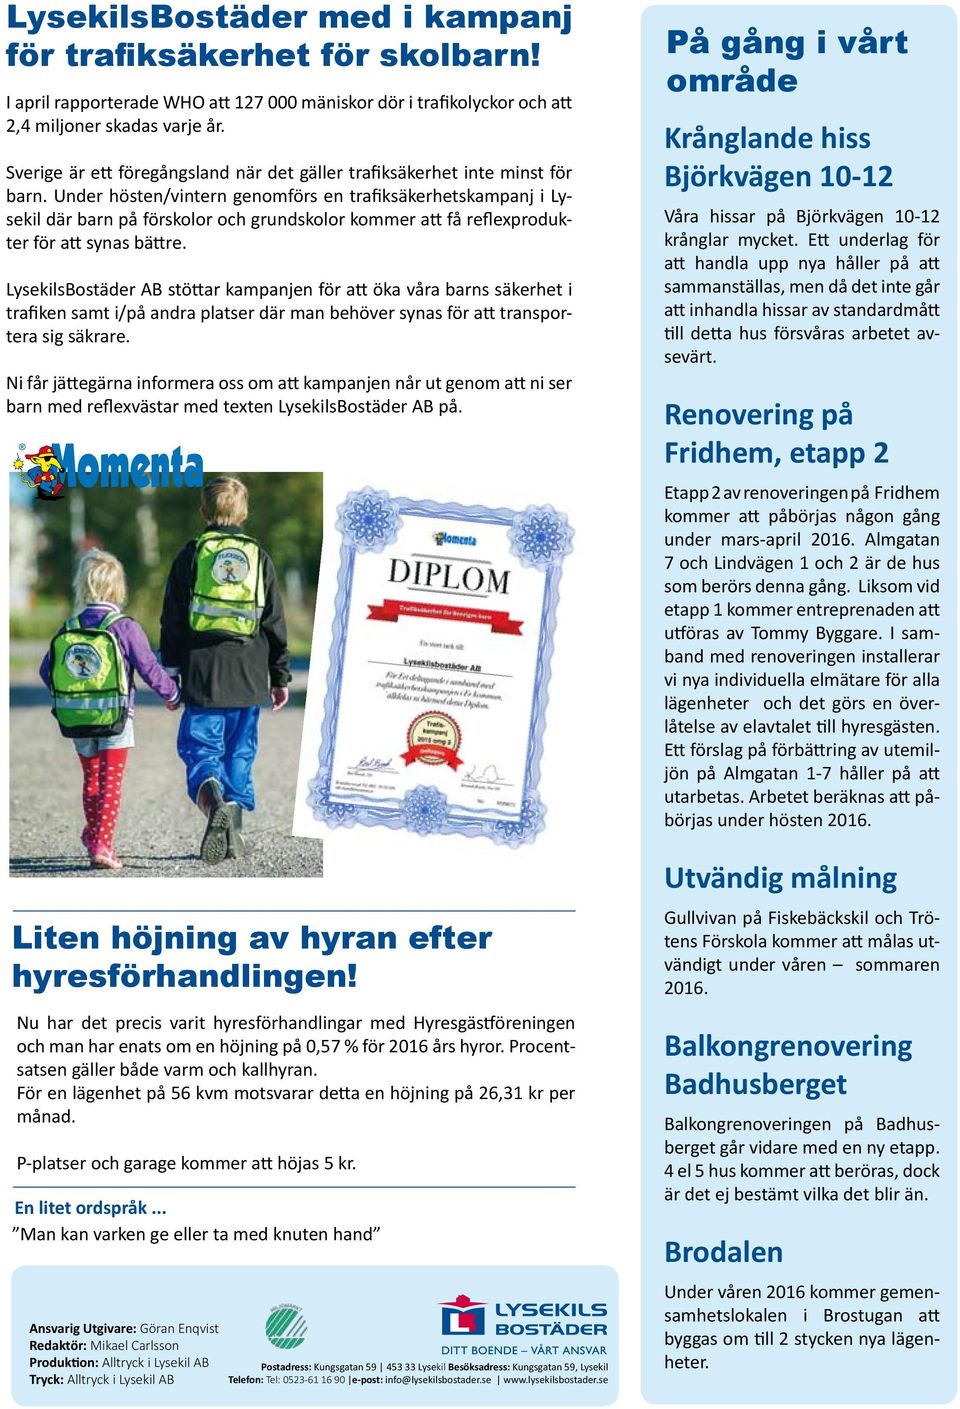 Under hösten/vintern genomförs en trafiksäkerhetskampanj i Lysekil där barn på förskolor och grundskolor kommer att få reflexprodukter för att synas bättre.